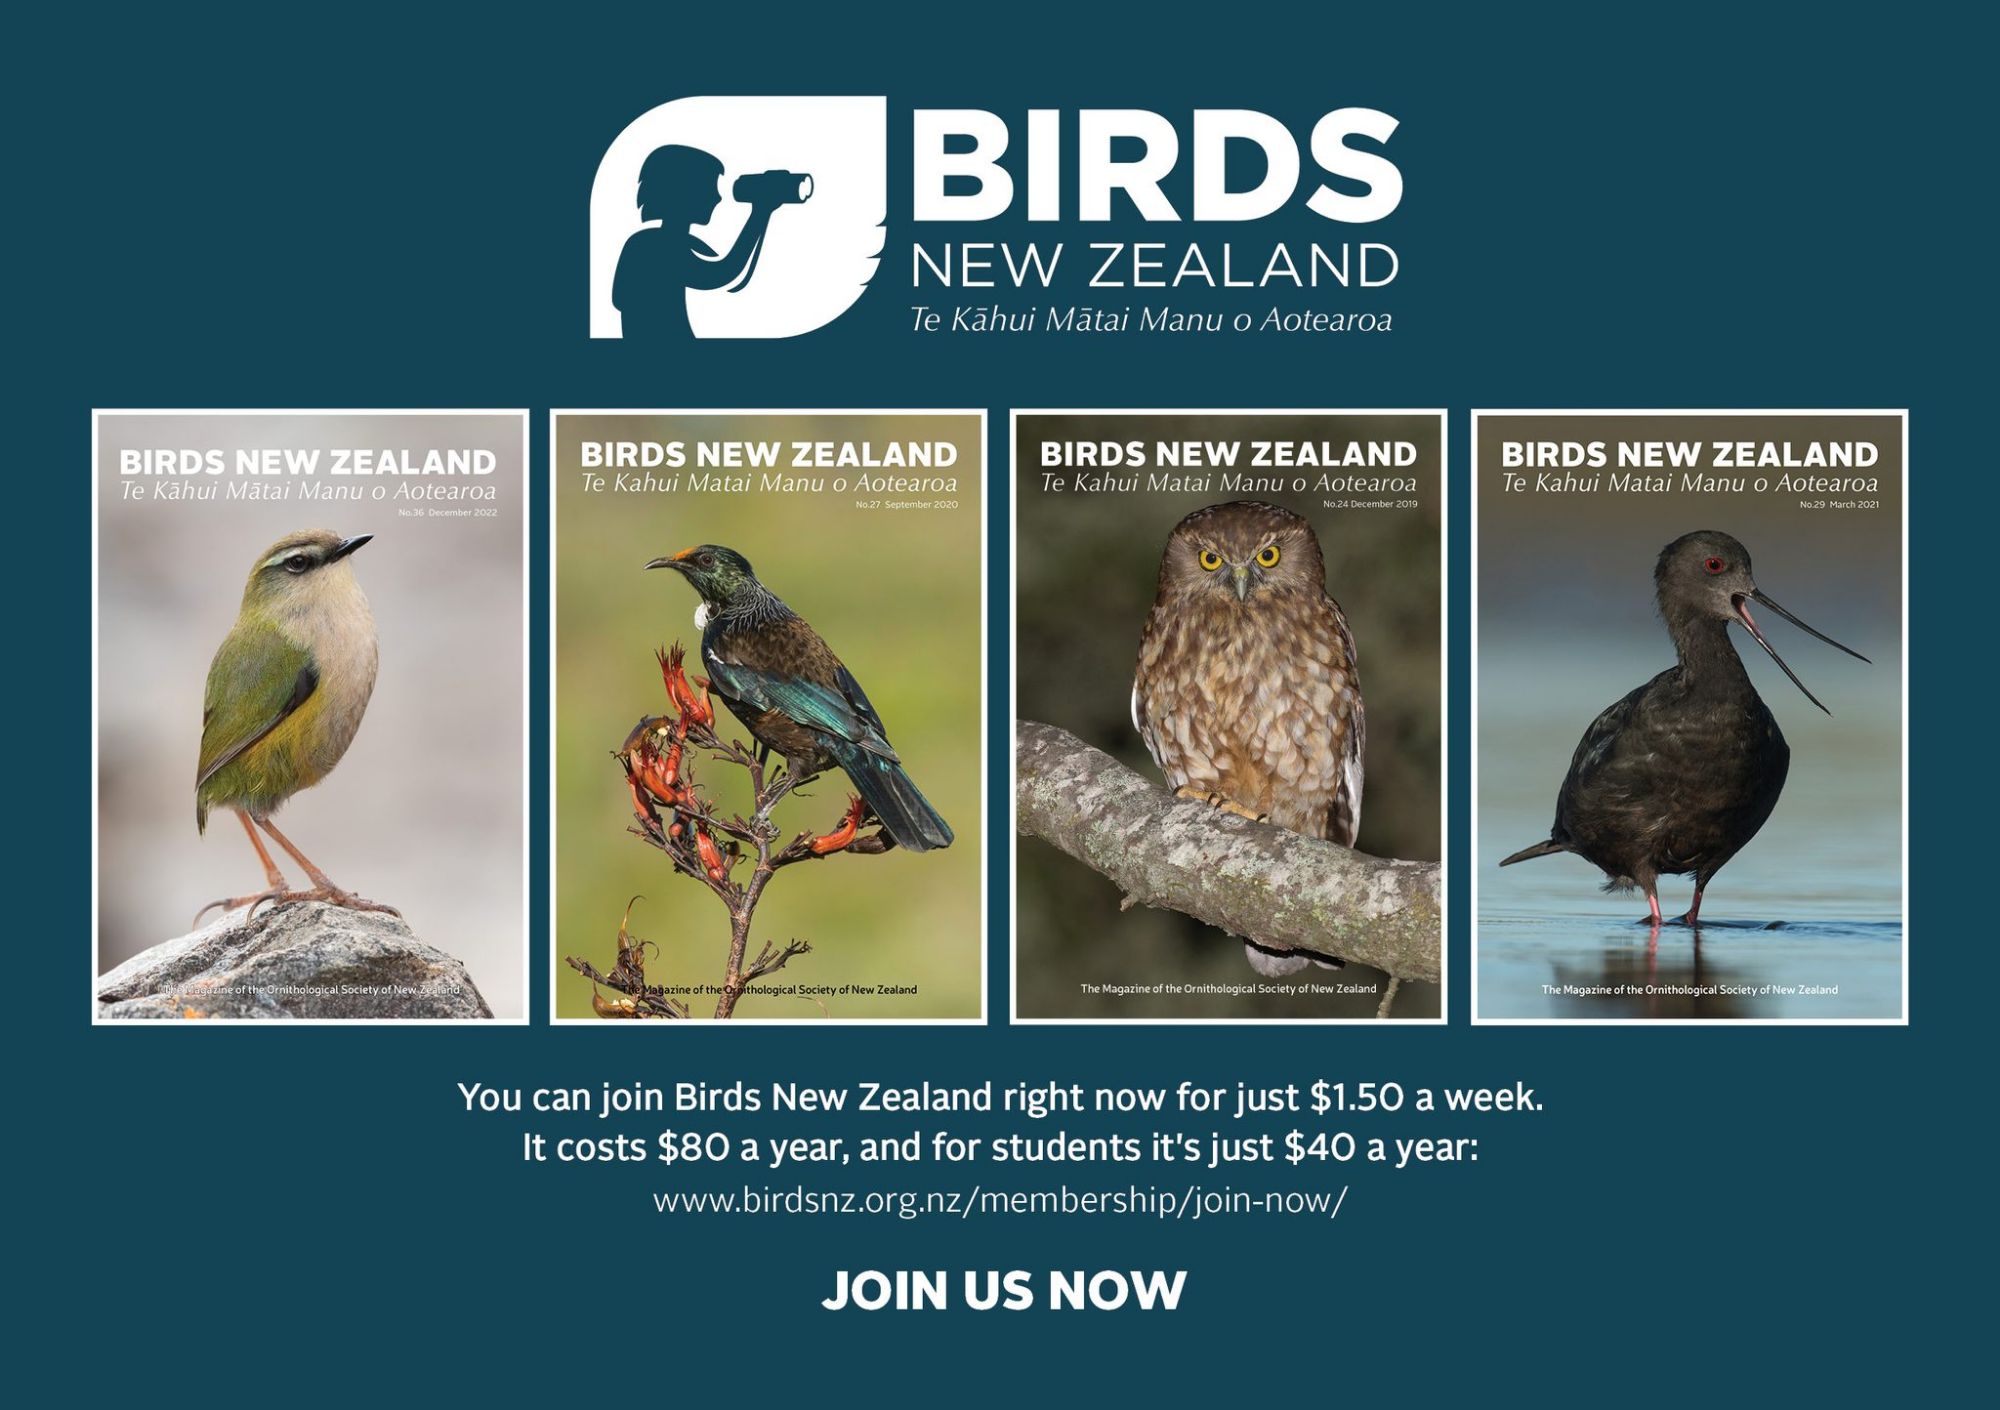 https://www.birdsnz.org.nz/membership/join-now/